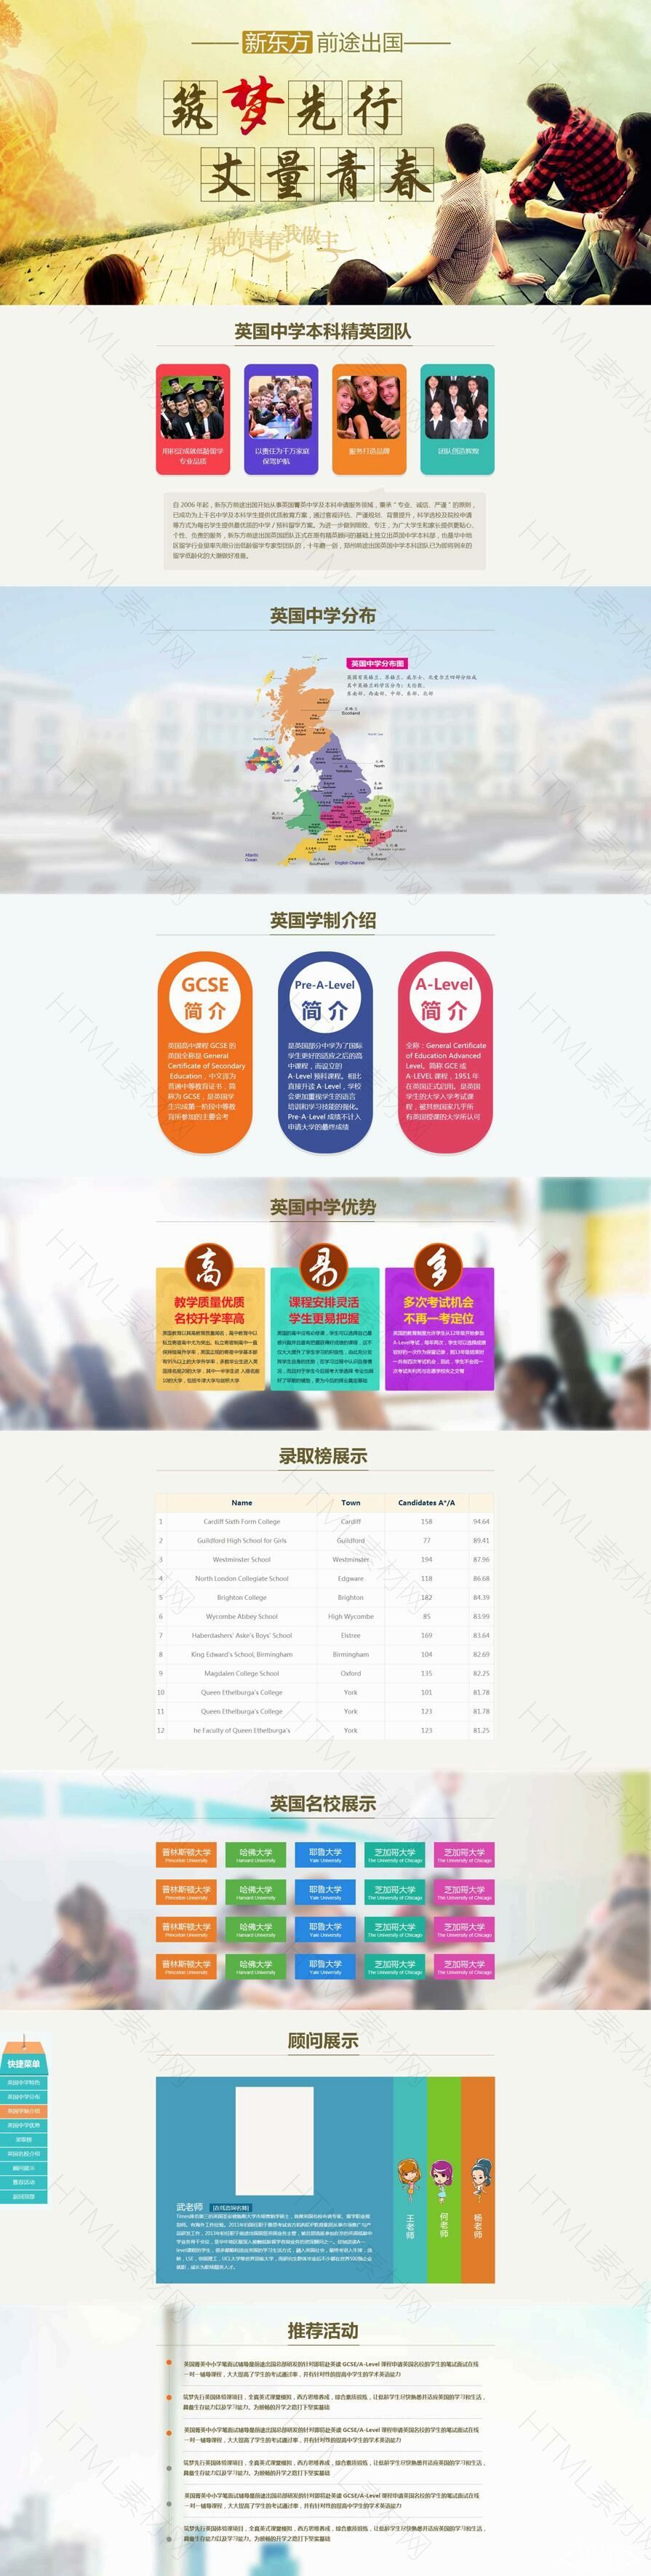 新东方出国留言教育专题页面模板下载- 素材8